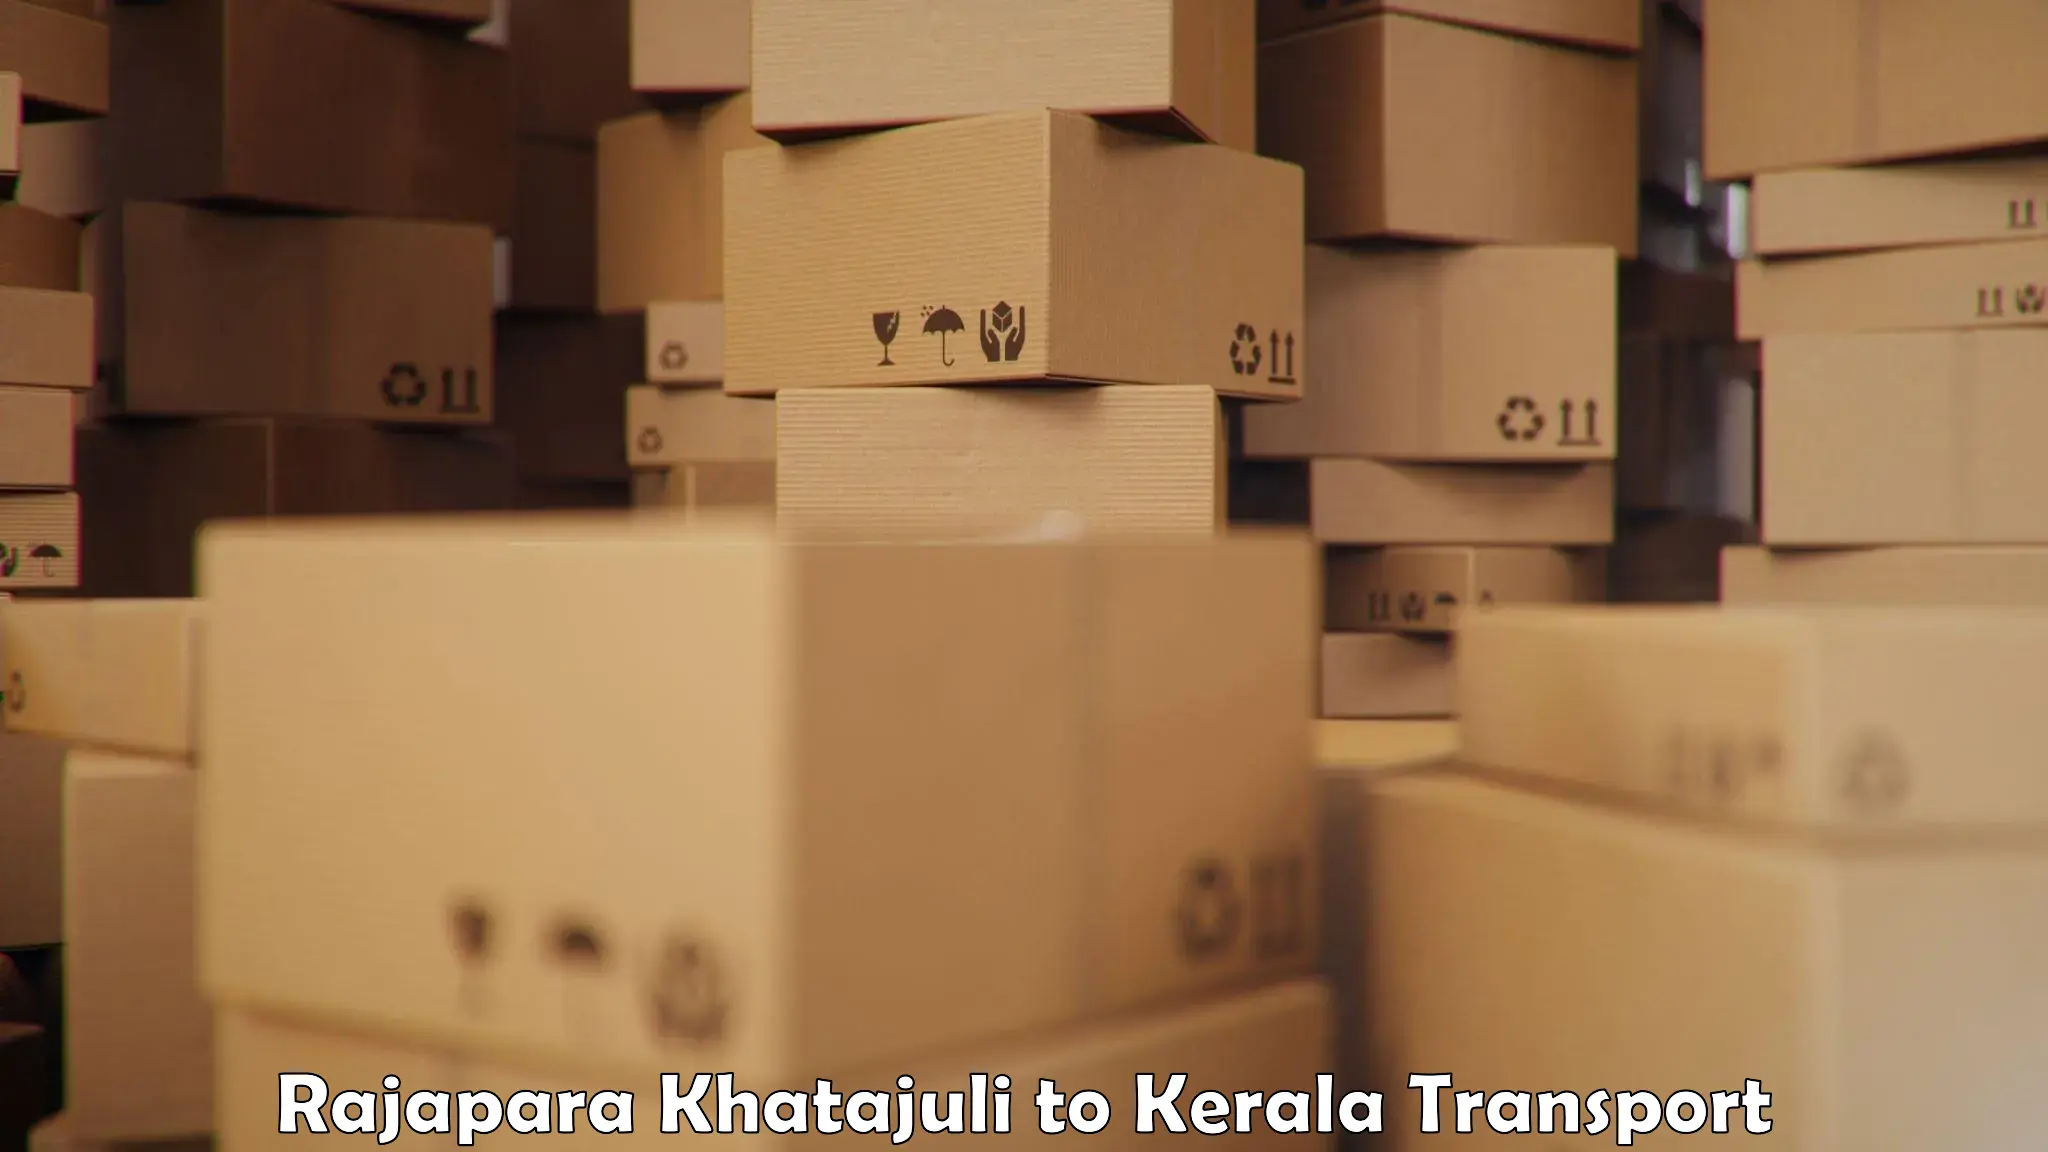 Part load transport service in India Rajapara Khatajuli to Ponnani